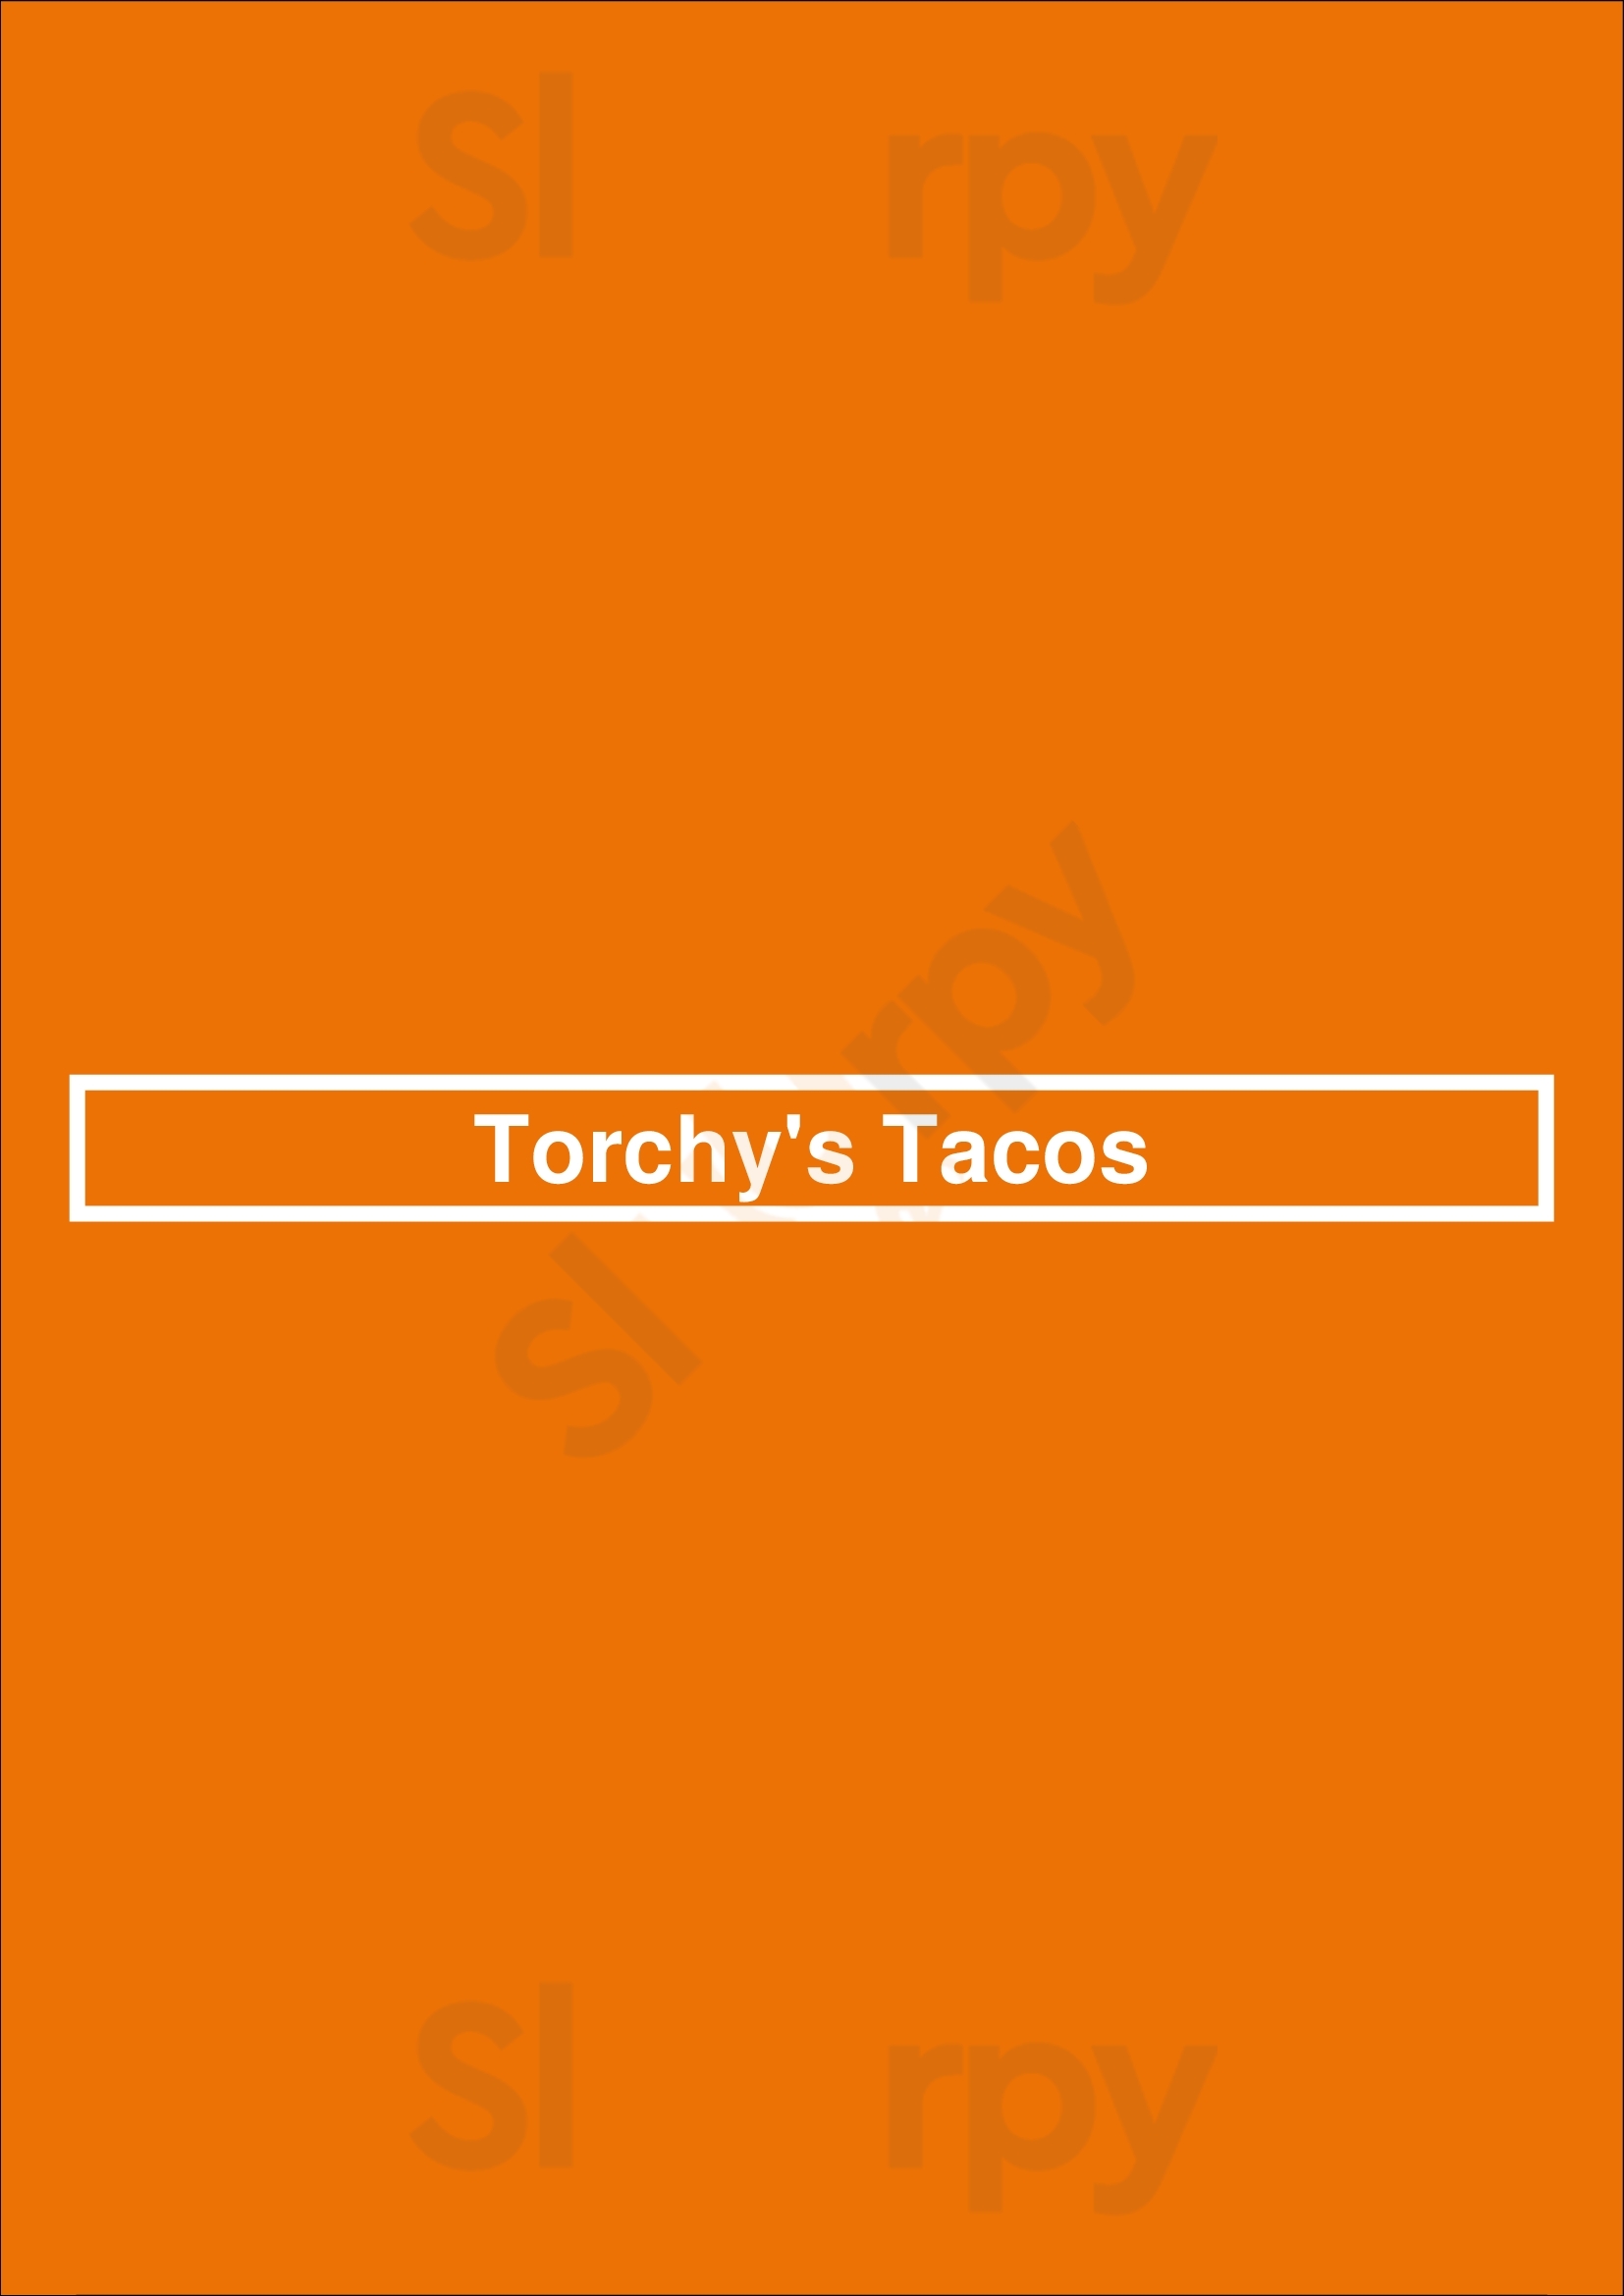 Torchys Tacos Denver Menu - 1